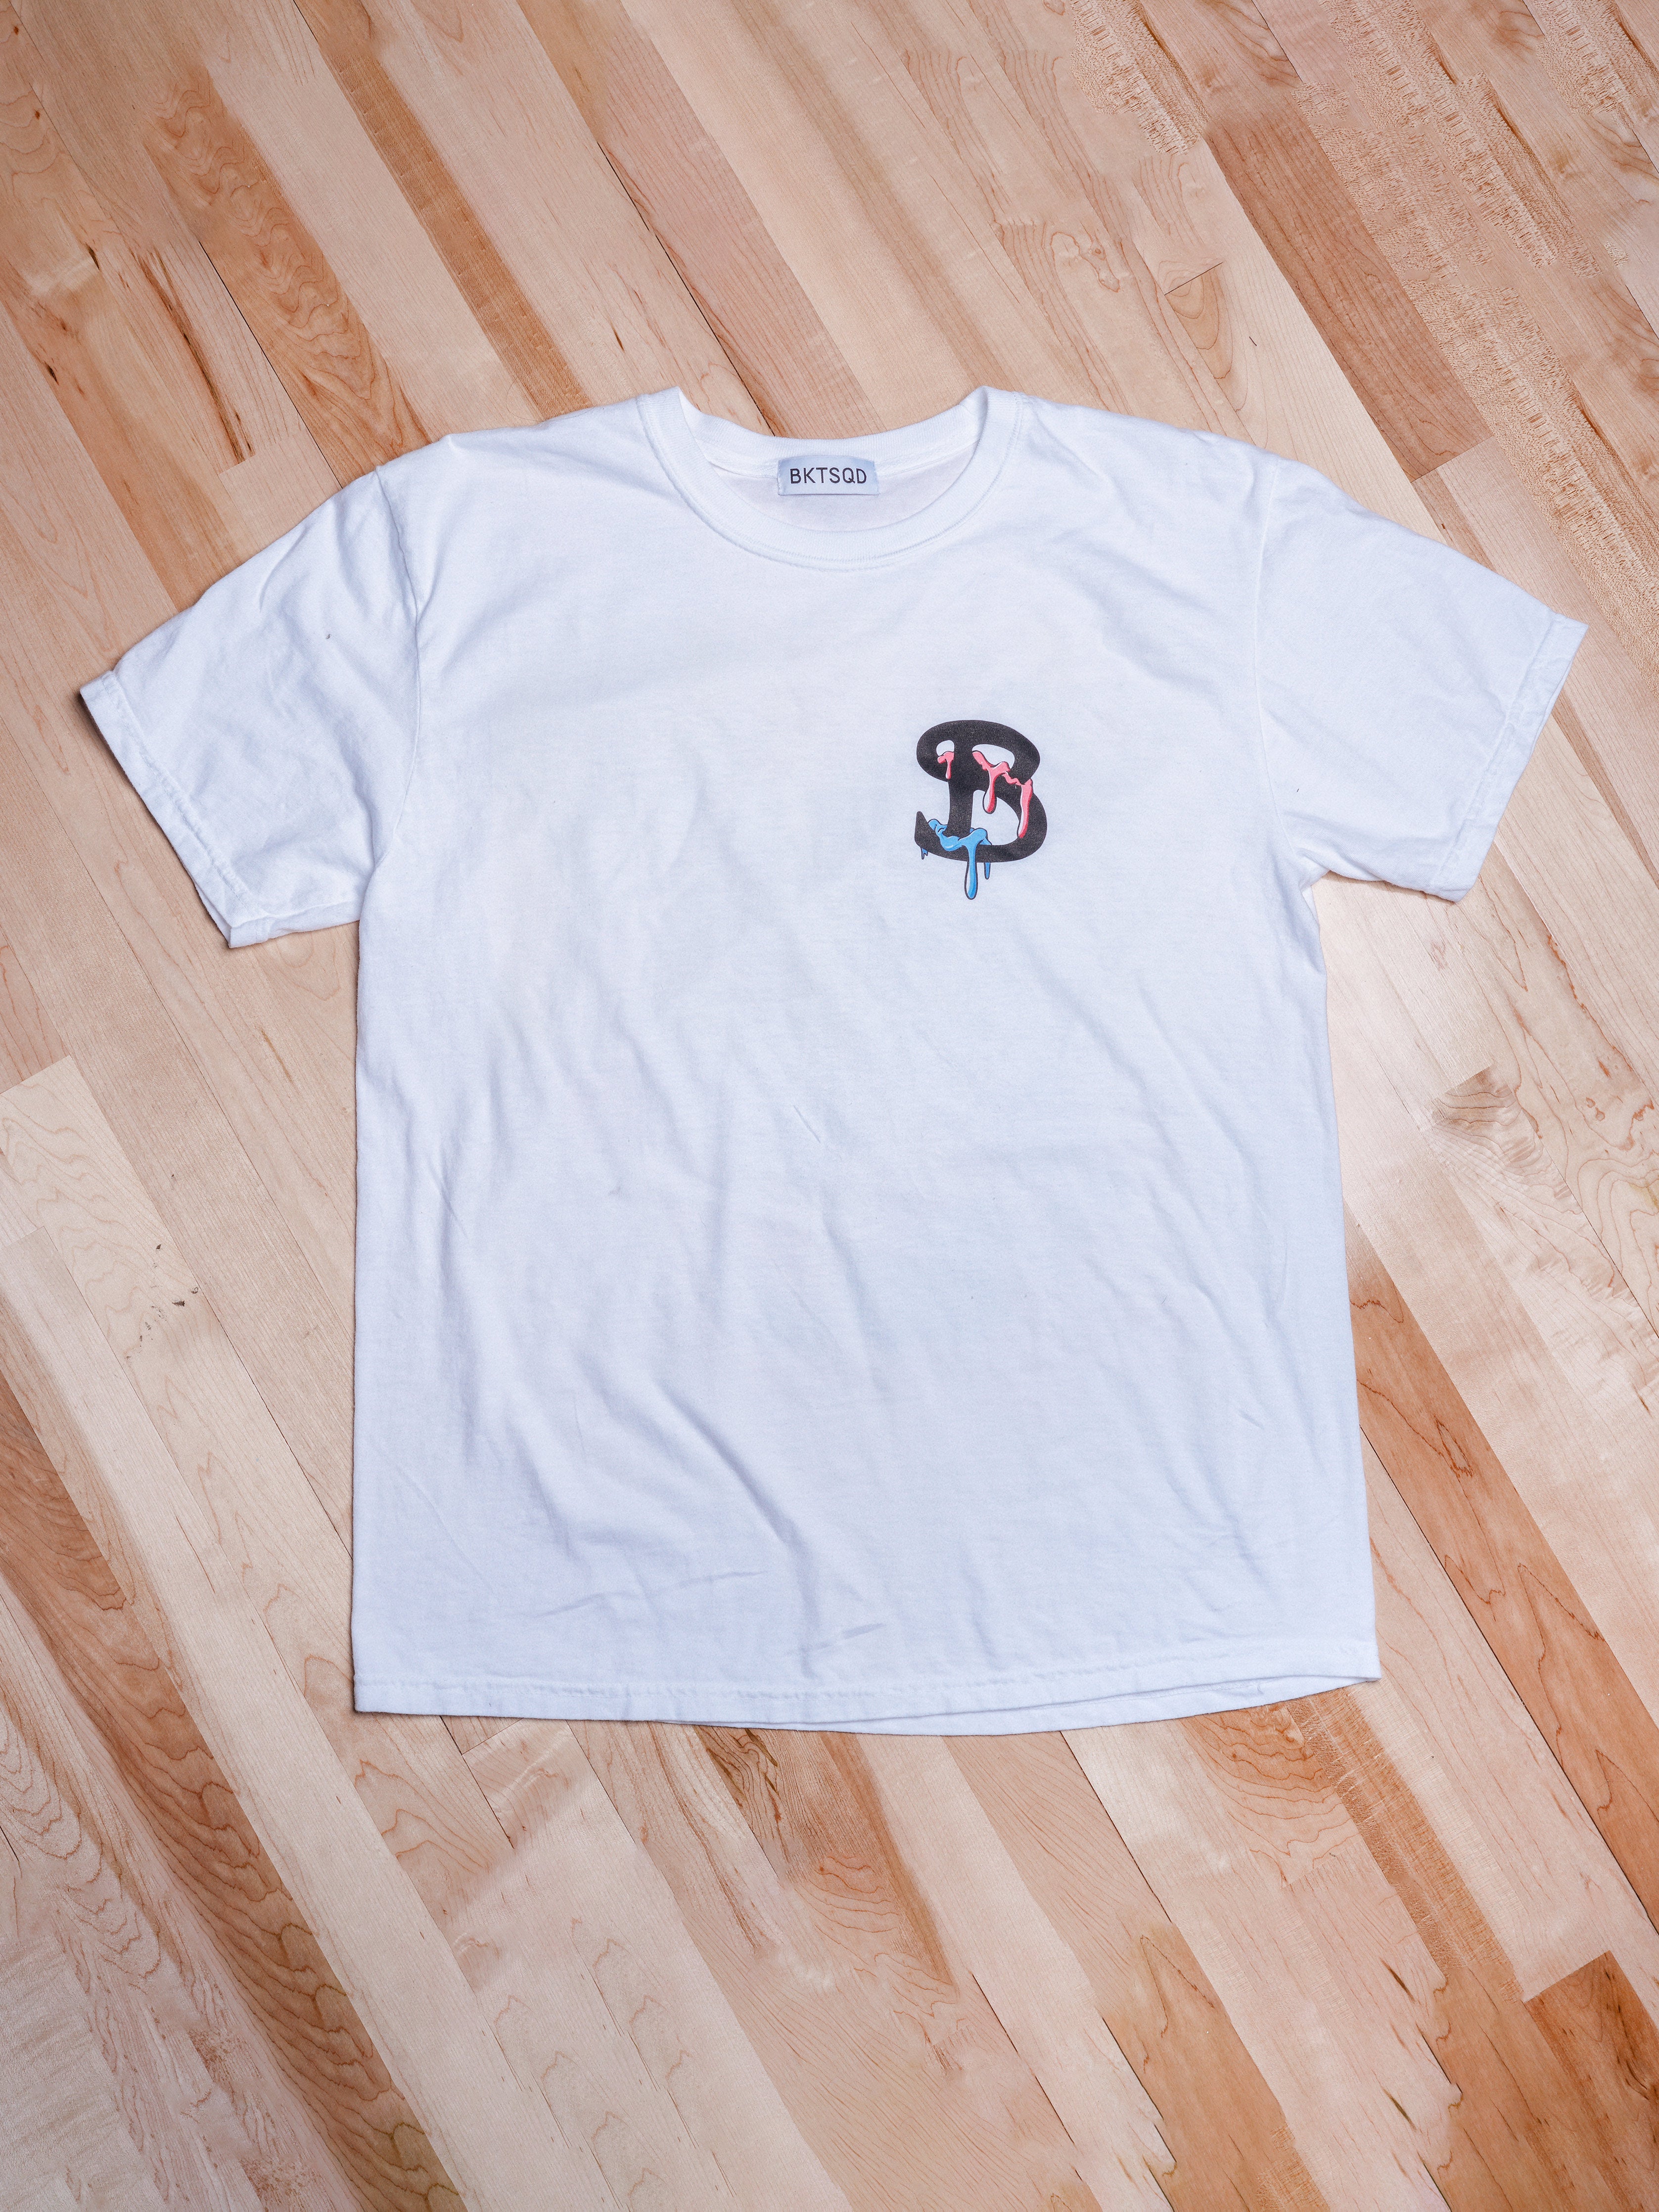 ZHC x BKTSQD ADULT T-Shirt | Code Red